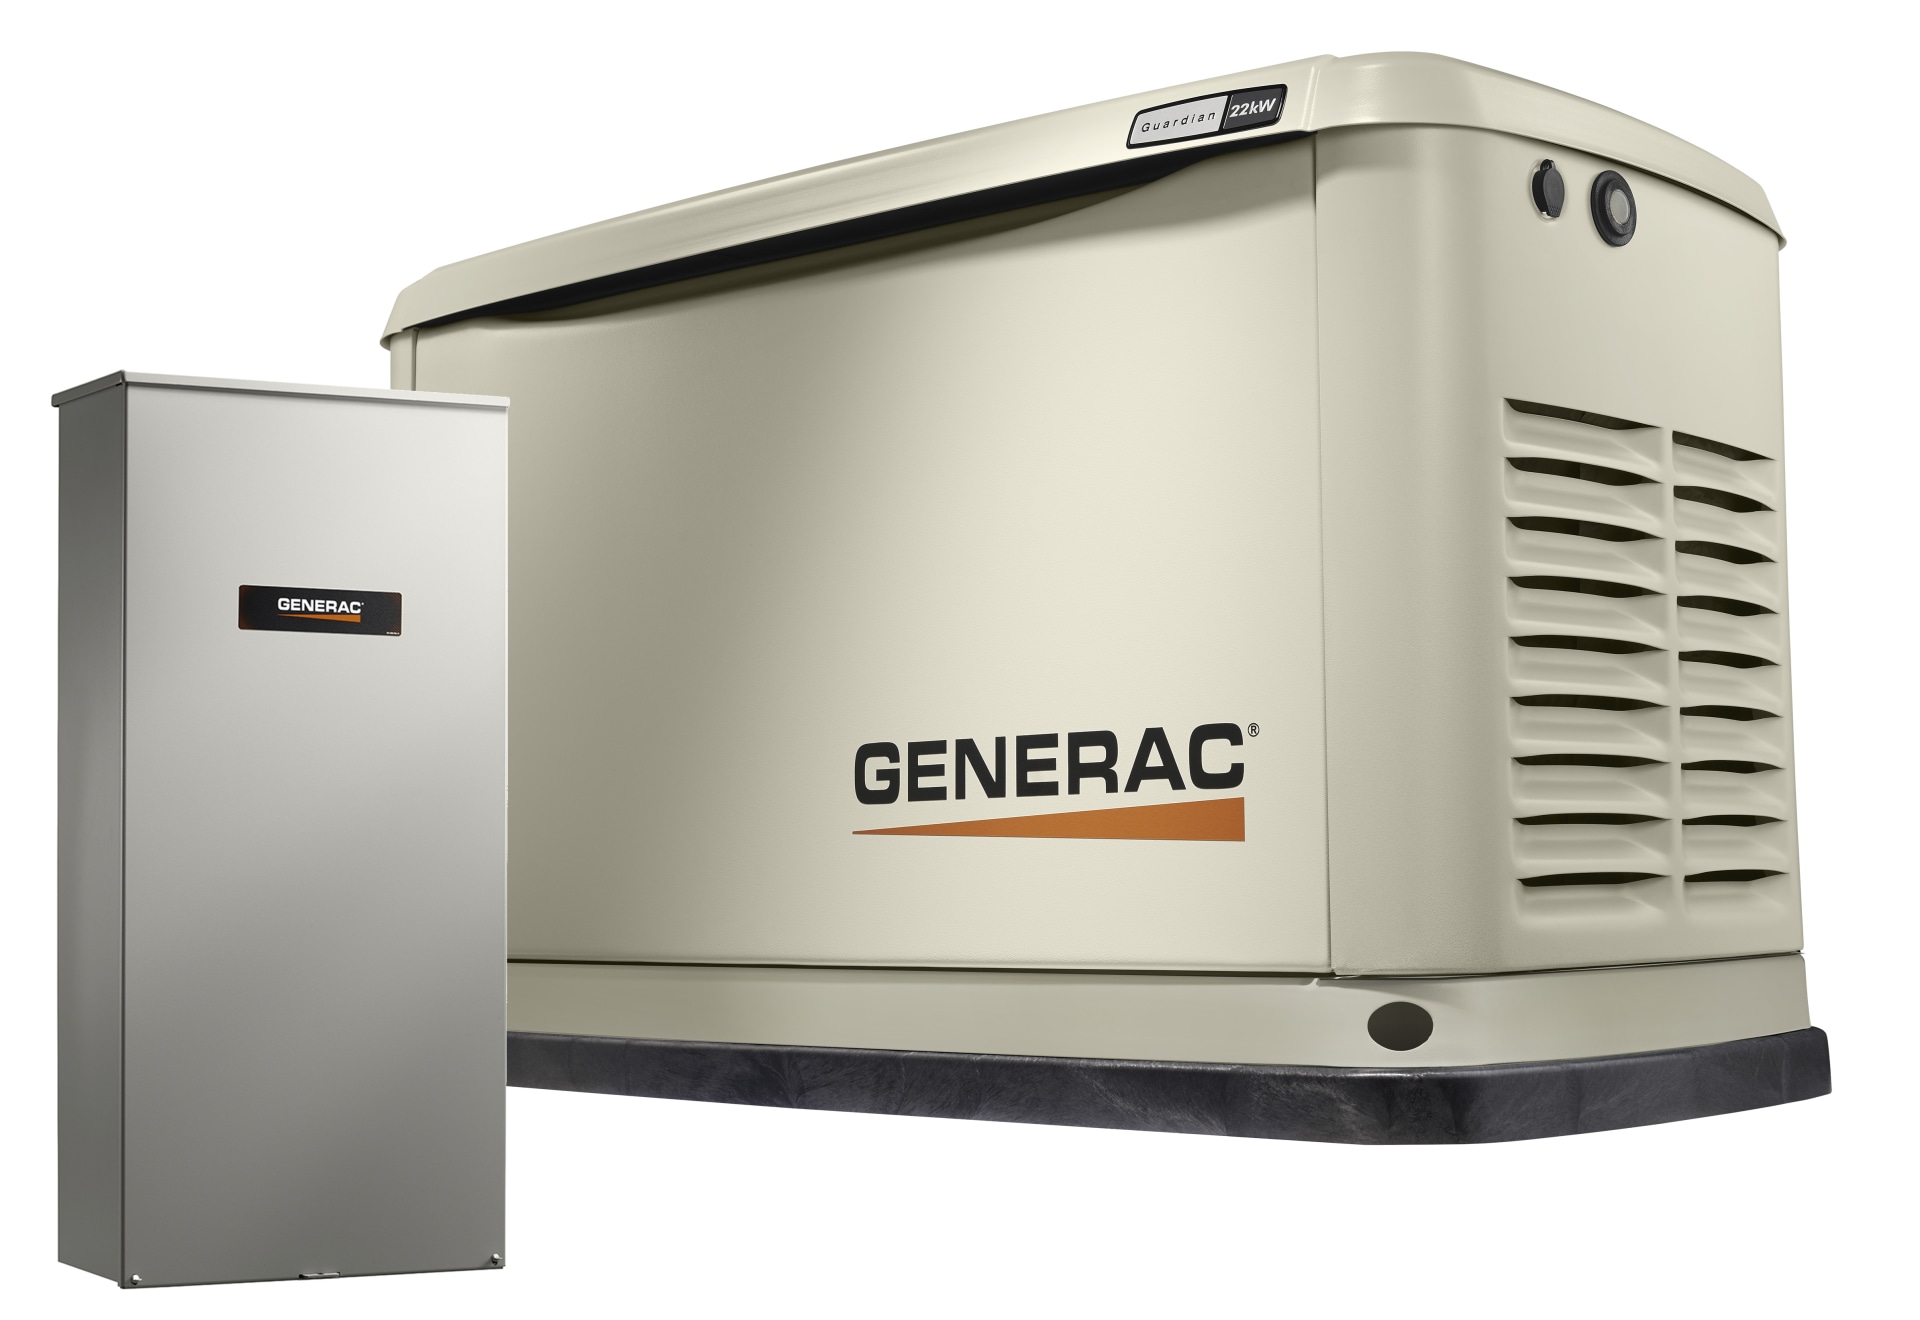 Generac Generator Overview